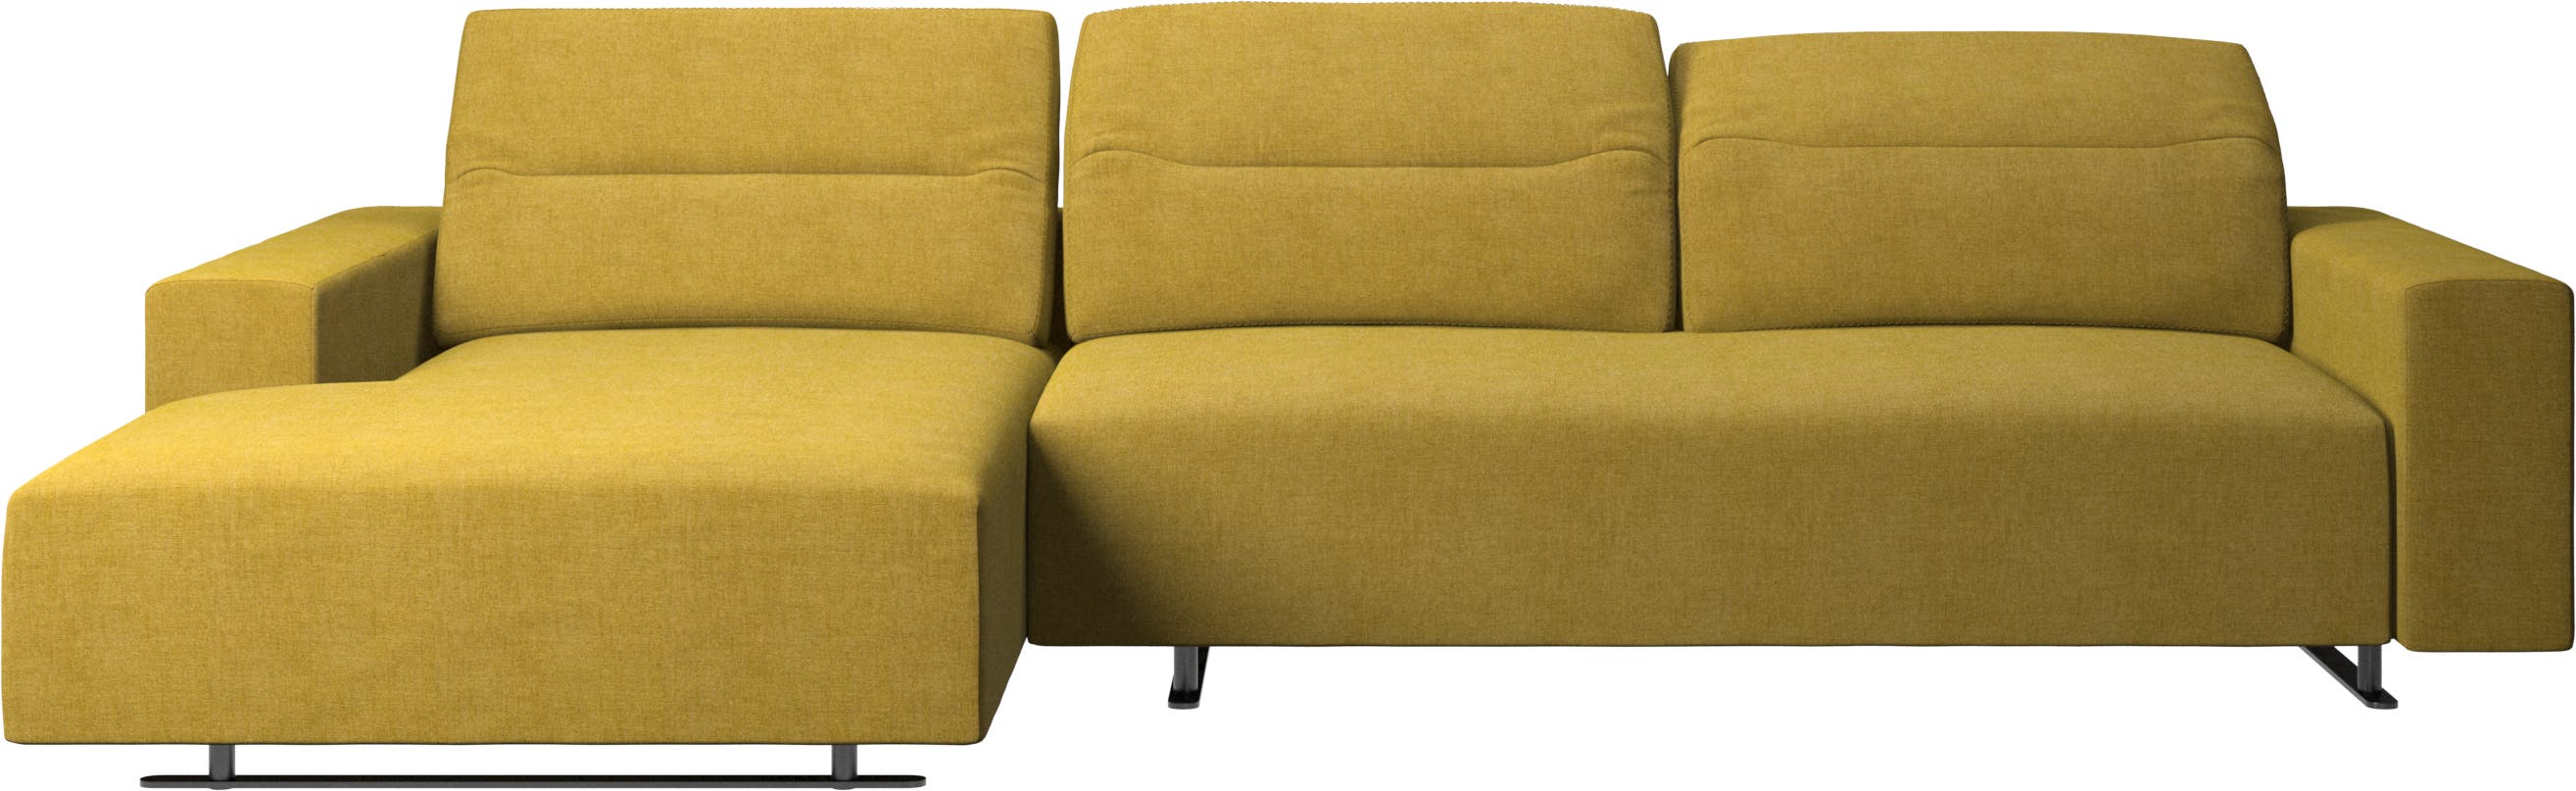 Hampton sofa med justerbar rygg, hvilemodul og oppbevaring begge sider